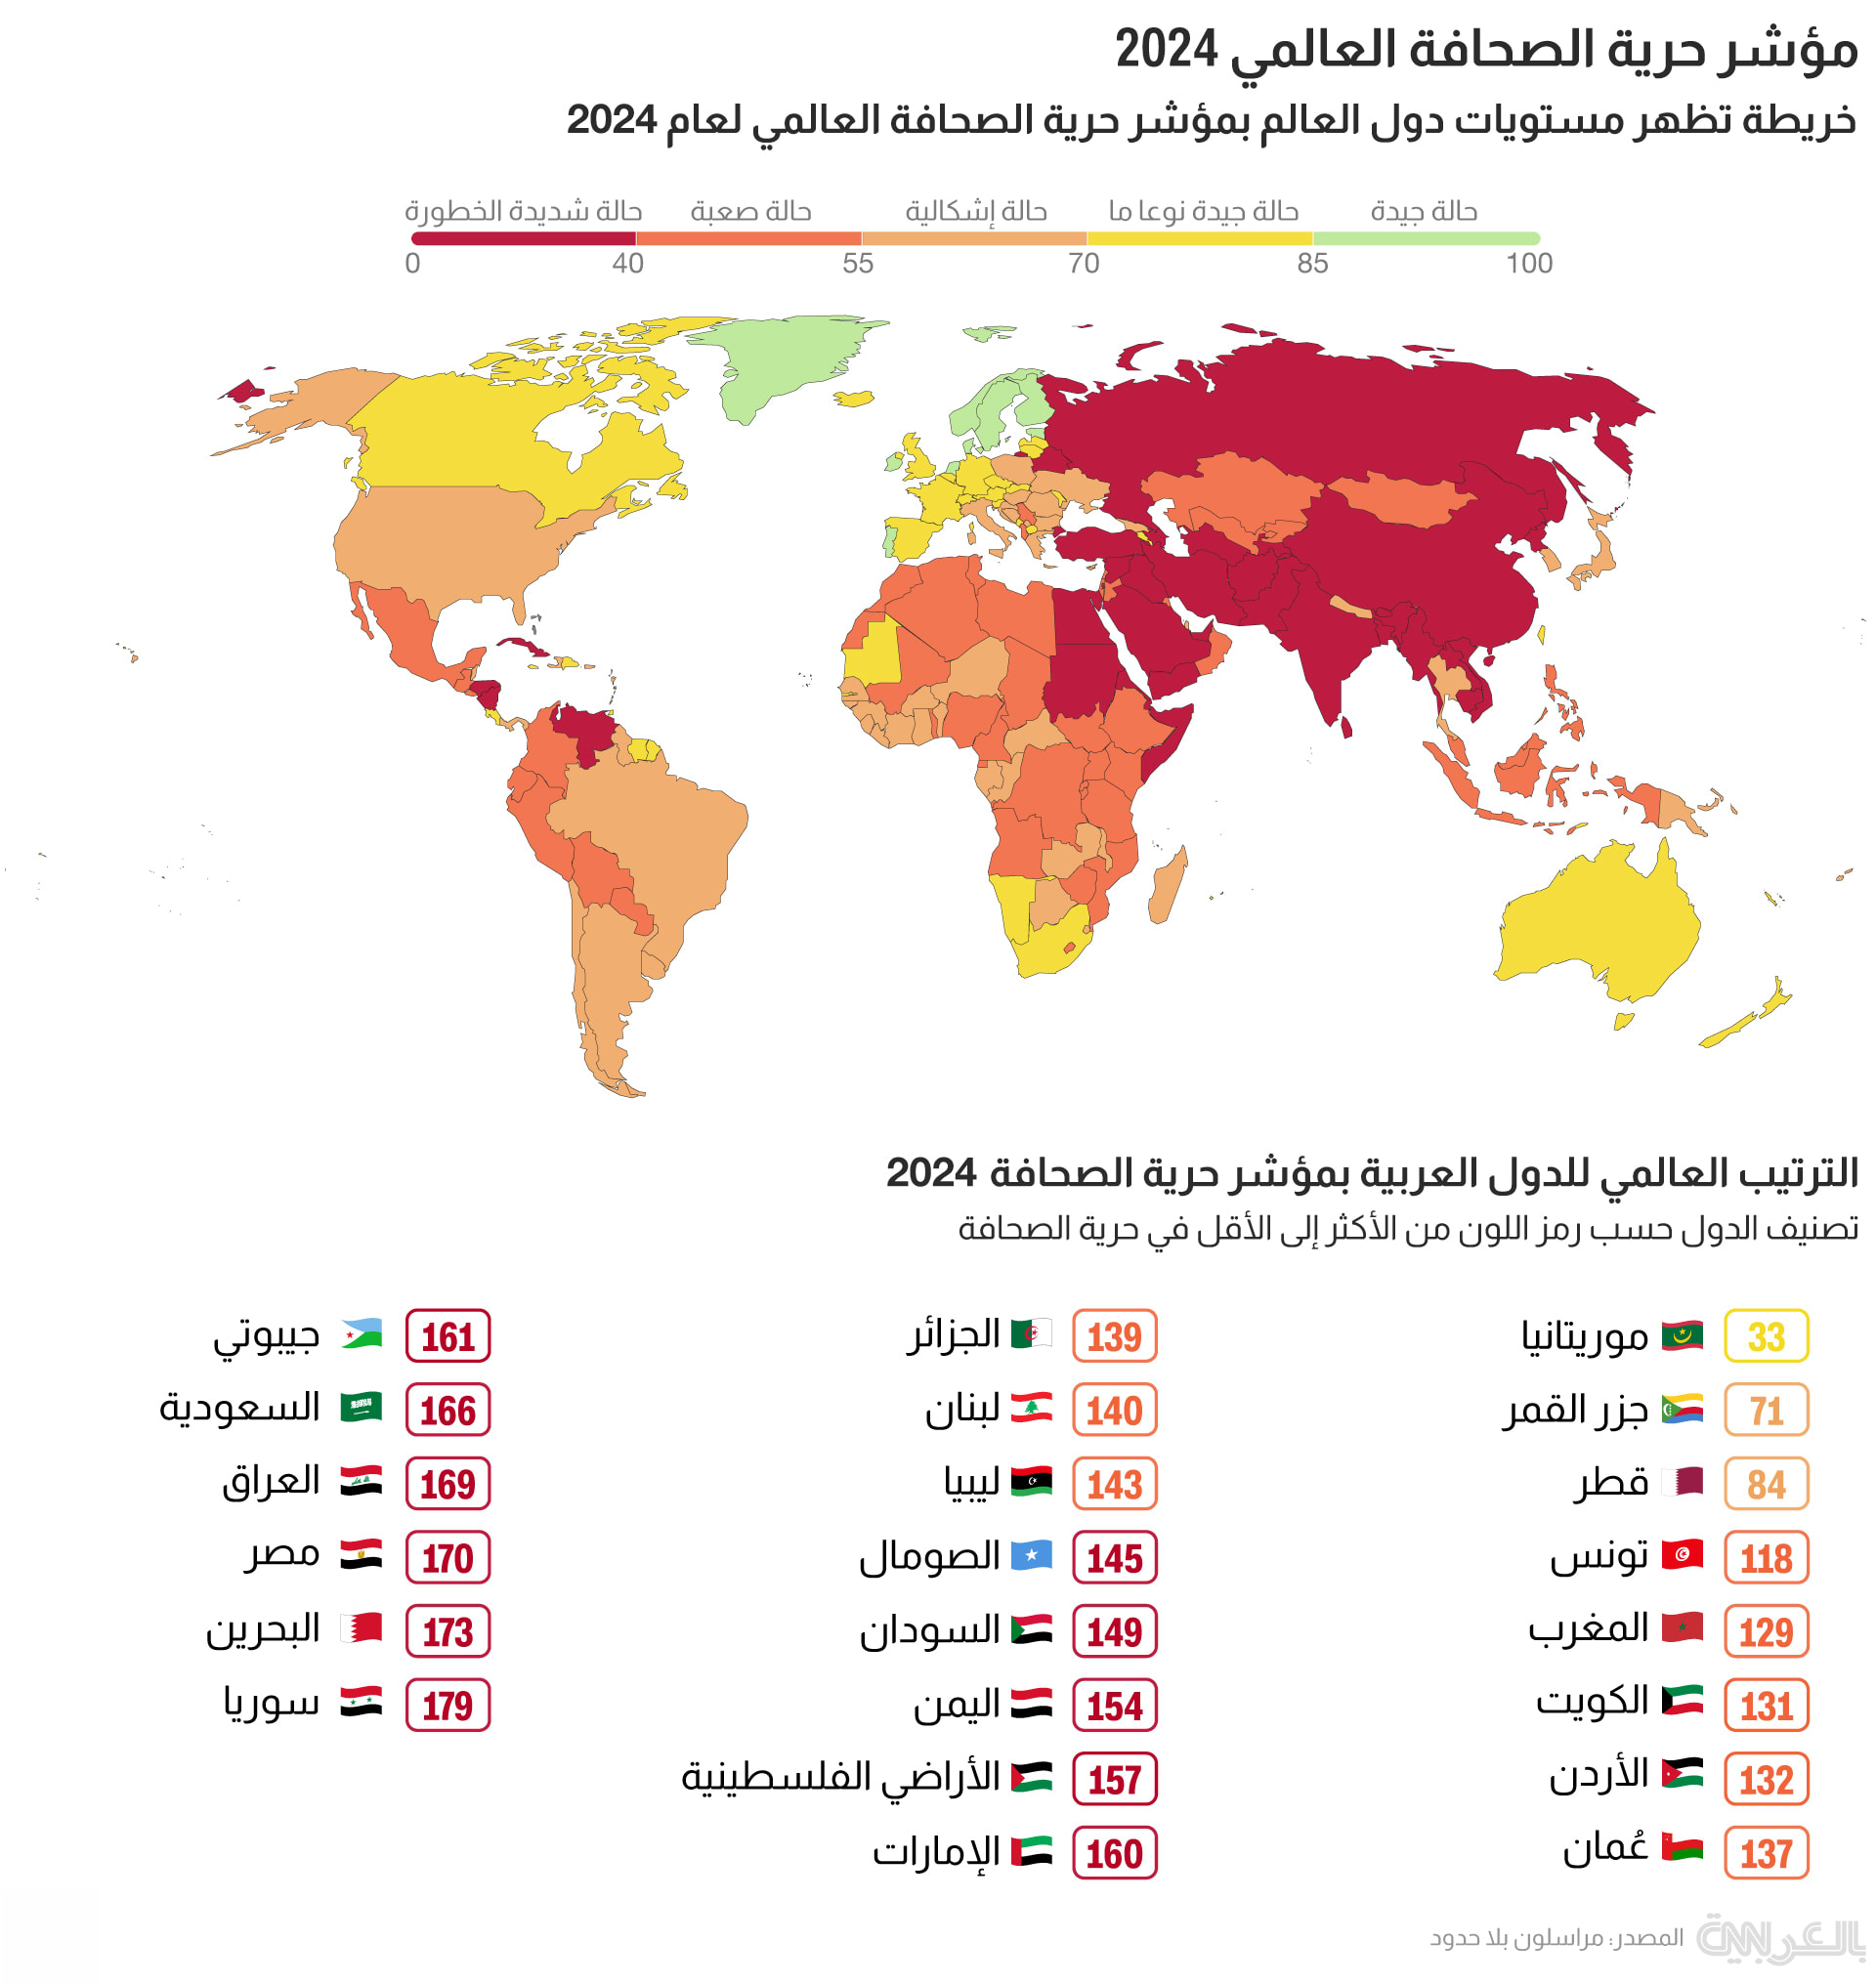 اليمن في ذيل قائمة مؤشر حرية الصحافة عربيًا وعالميا لعام 2024